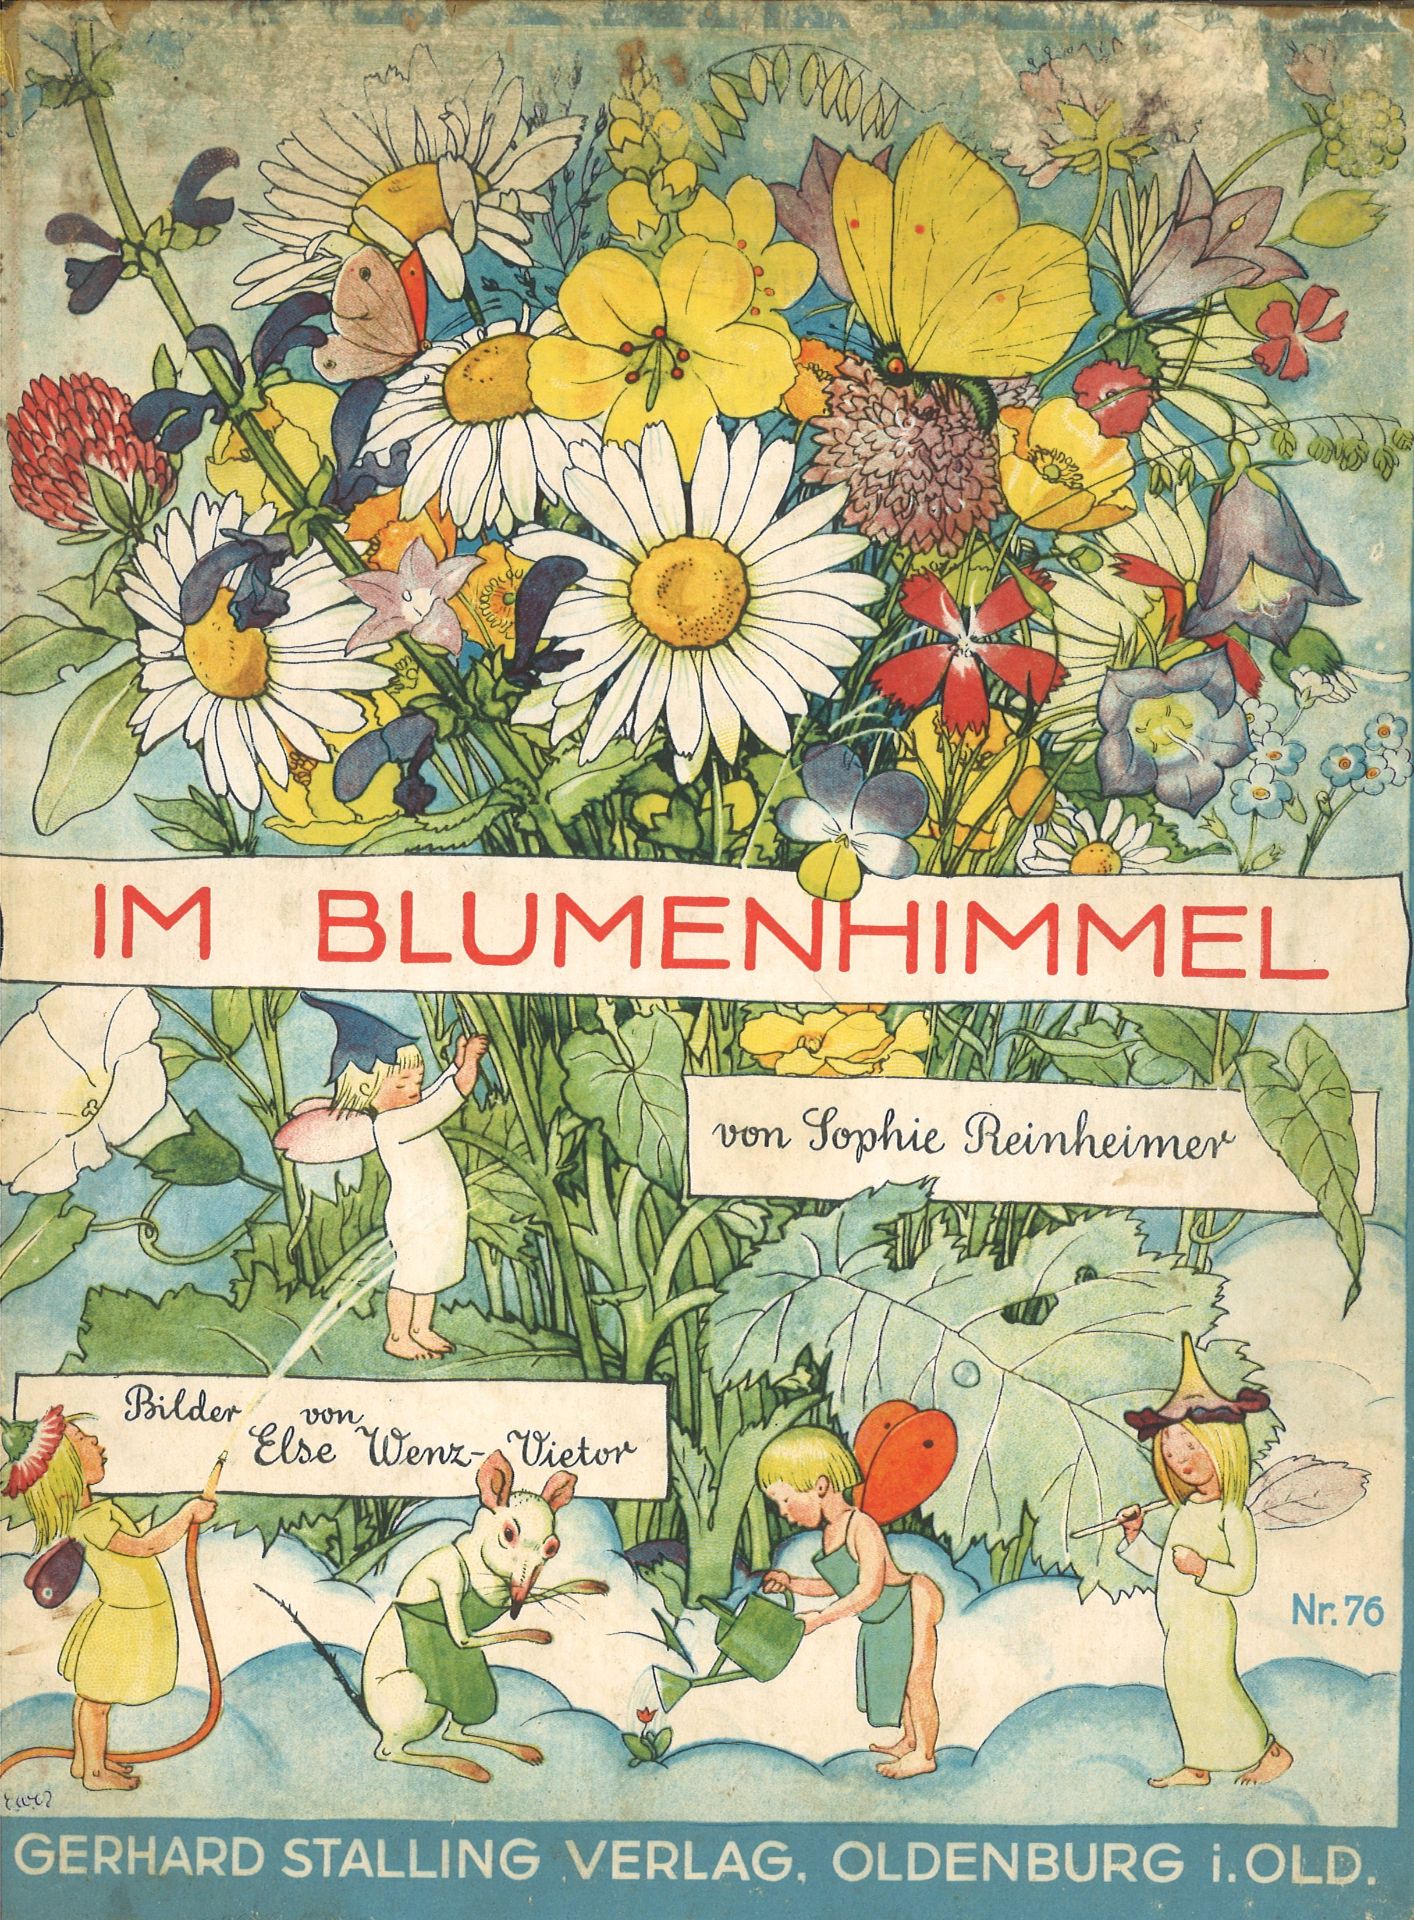 Kinderbuch "Im Blumenhimmel" von Sophie Reinheimer, Bilder von Else Wenz-Vietor, 1929, Nr. 76, stark